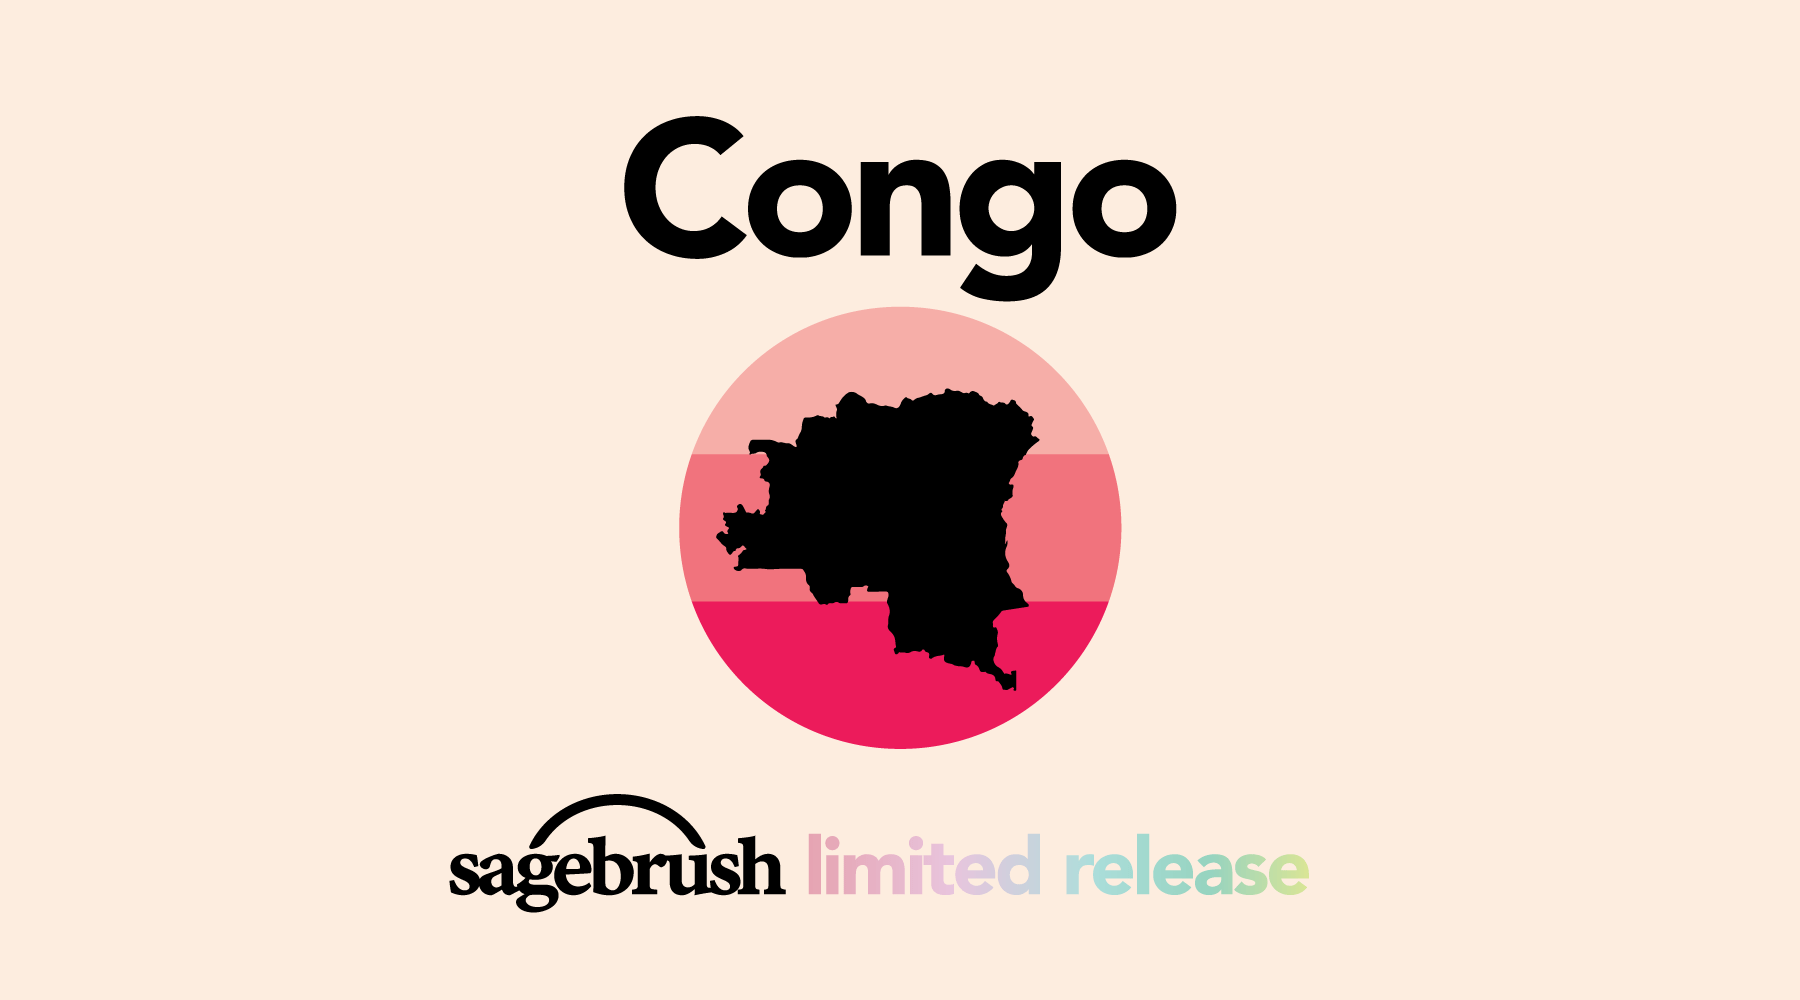 Democratic Republic of Congo Coffee History